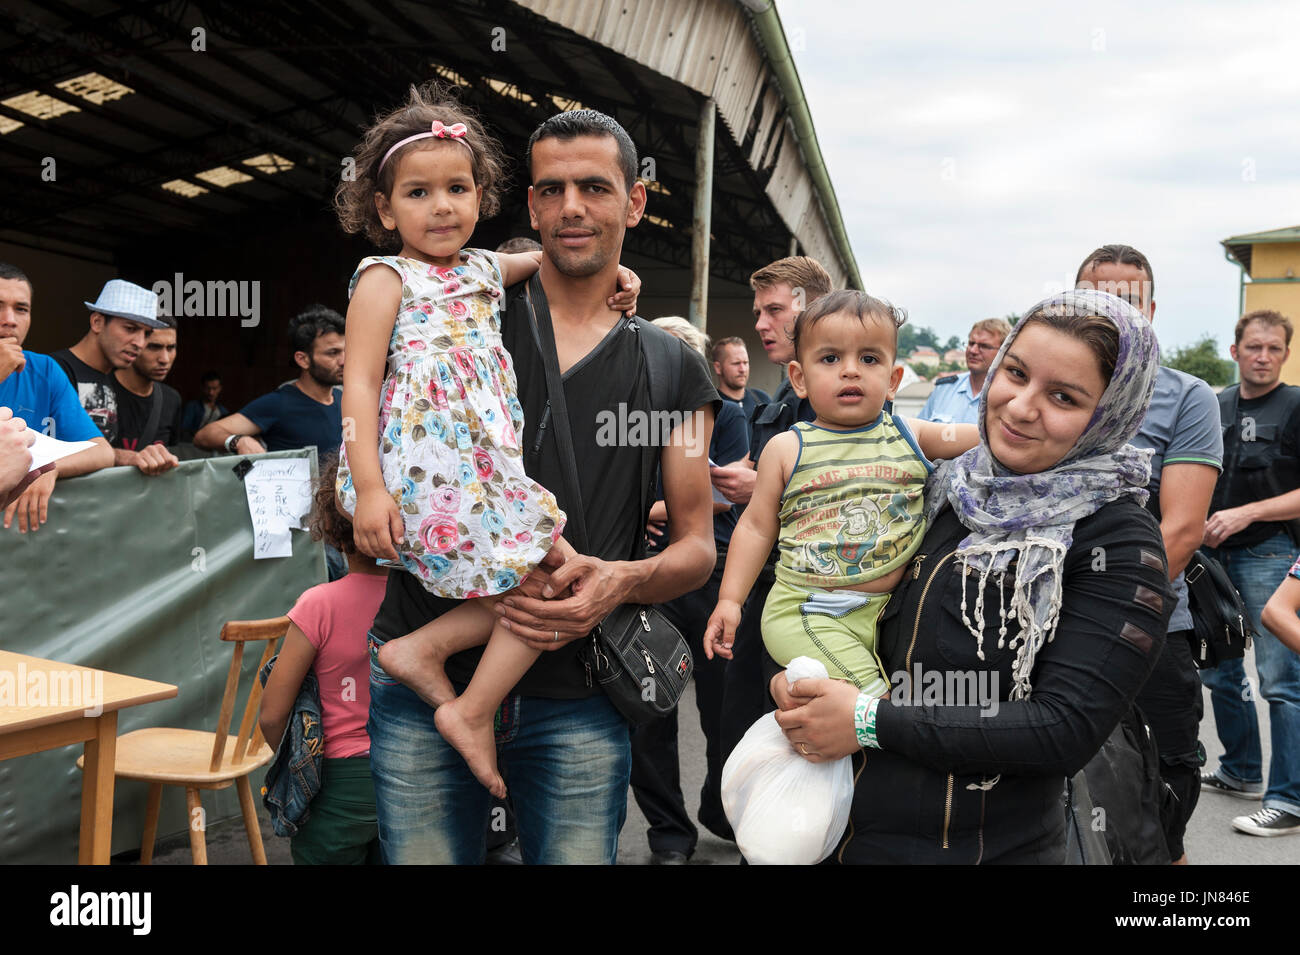 Passau, Allemagne - 1er août 2015 : la famille de réfugiés syriens au camp d'enregistrement à Passau, Allemagne. Ils demandent l'asile en Europe. Banque D'Images